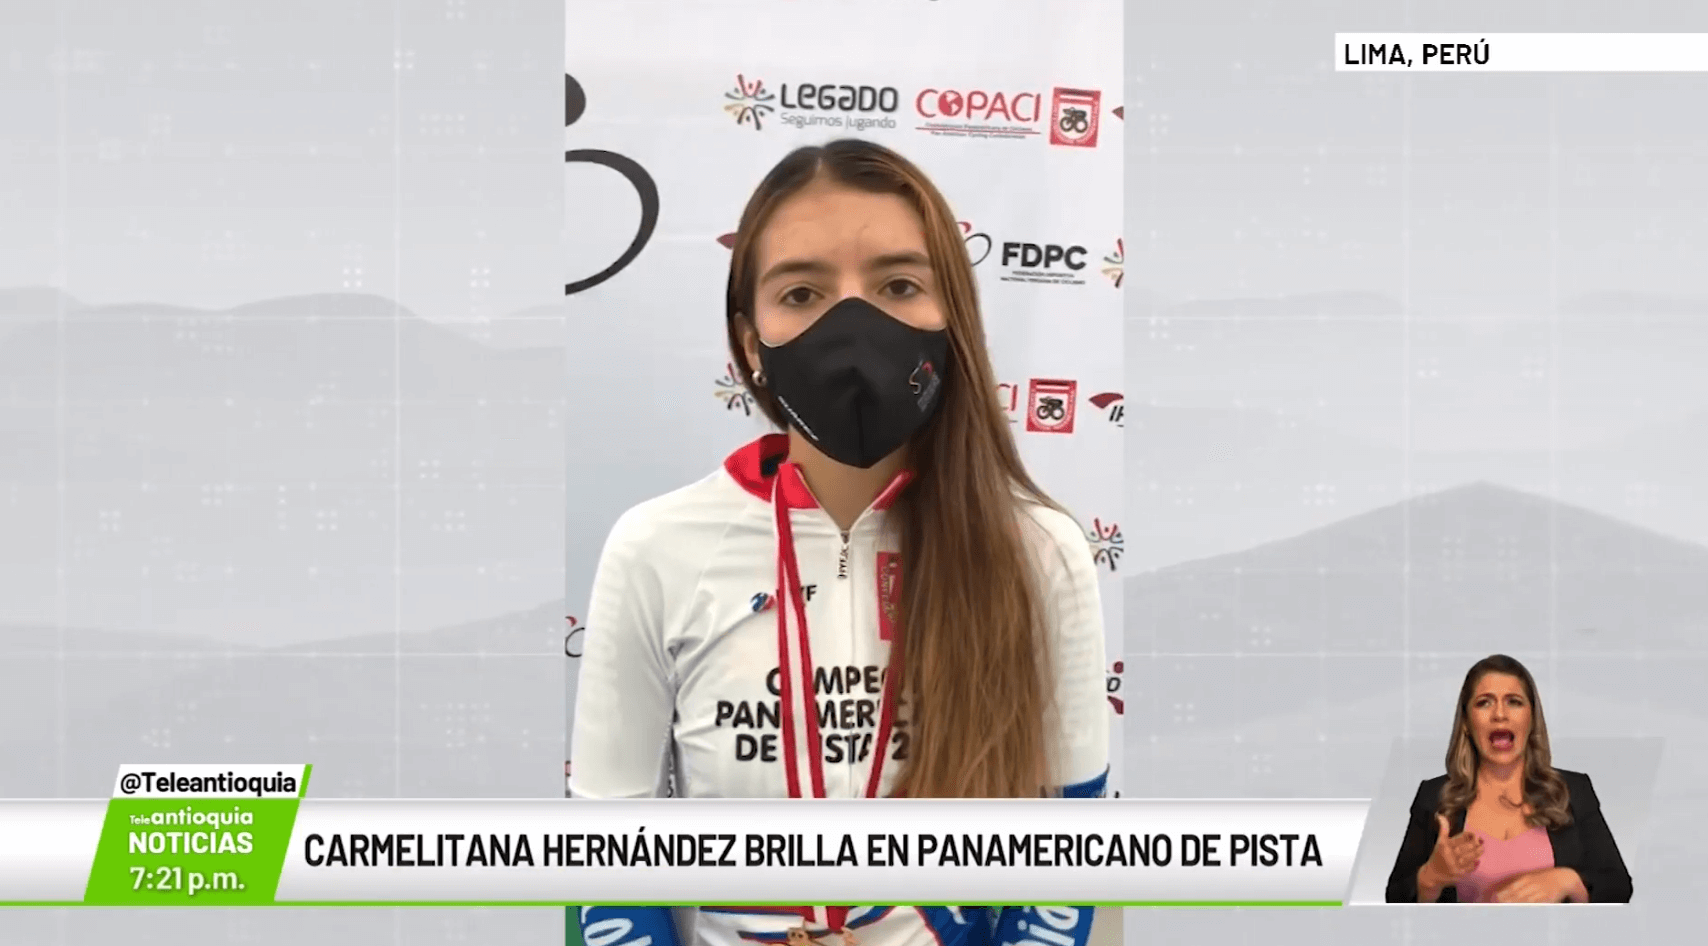 Carmelita Hernández brilla en panamericano de pista